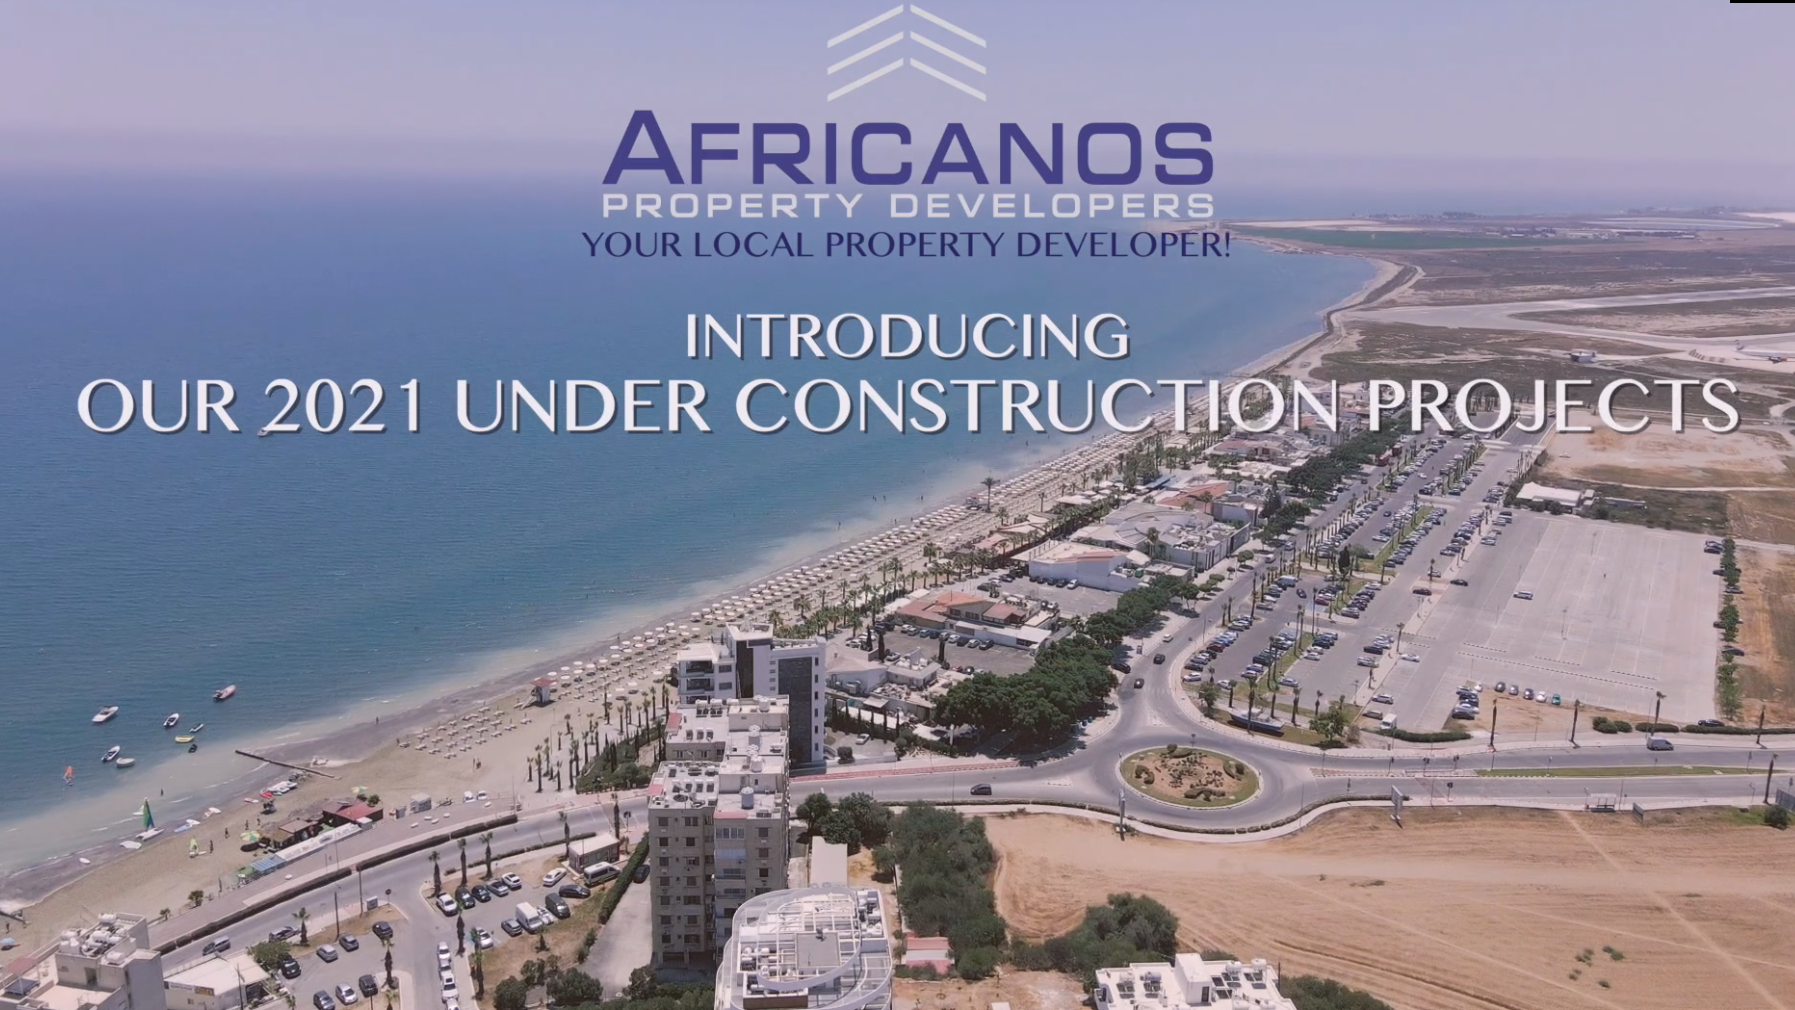 Δεκαοκτώ Ολοκαίνουργα έργα από την AFRICANOS PROPERTY DEVELOPERS για τα έτη 2021-2023